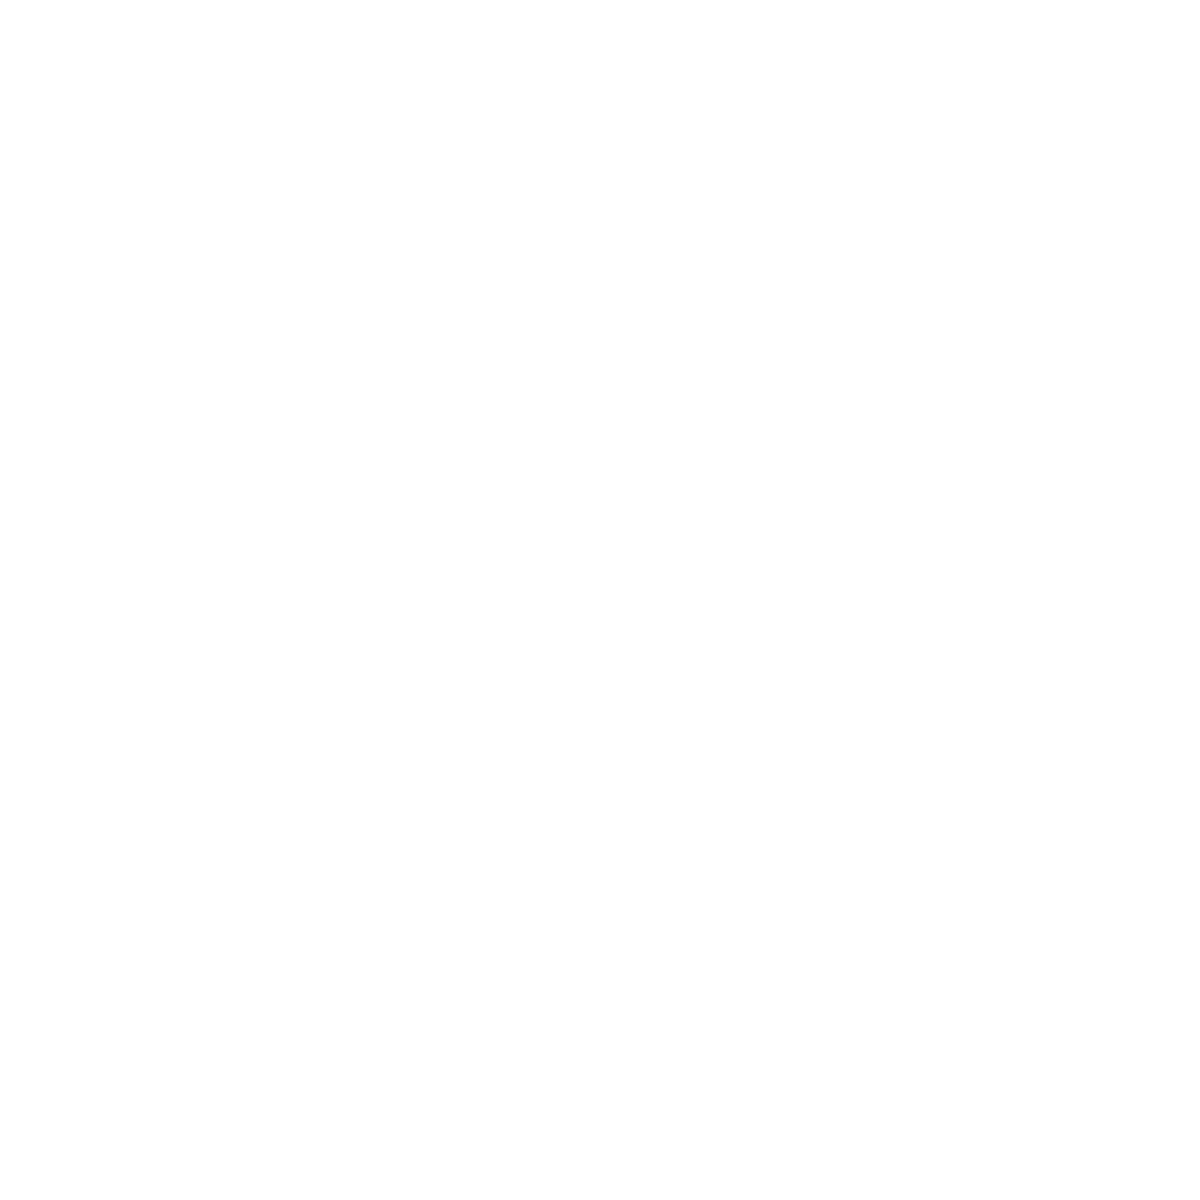 West Site Fitness Club Mława